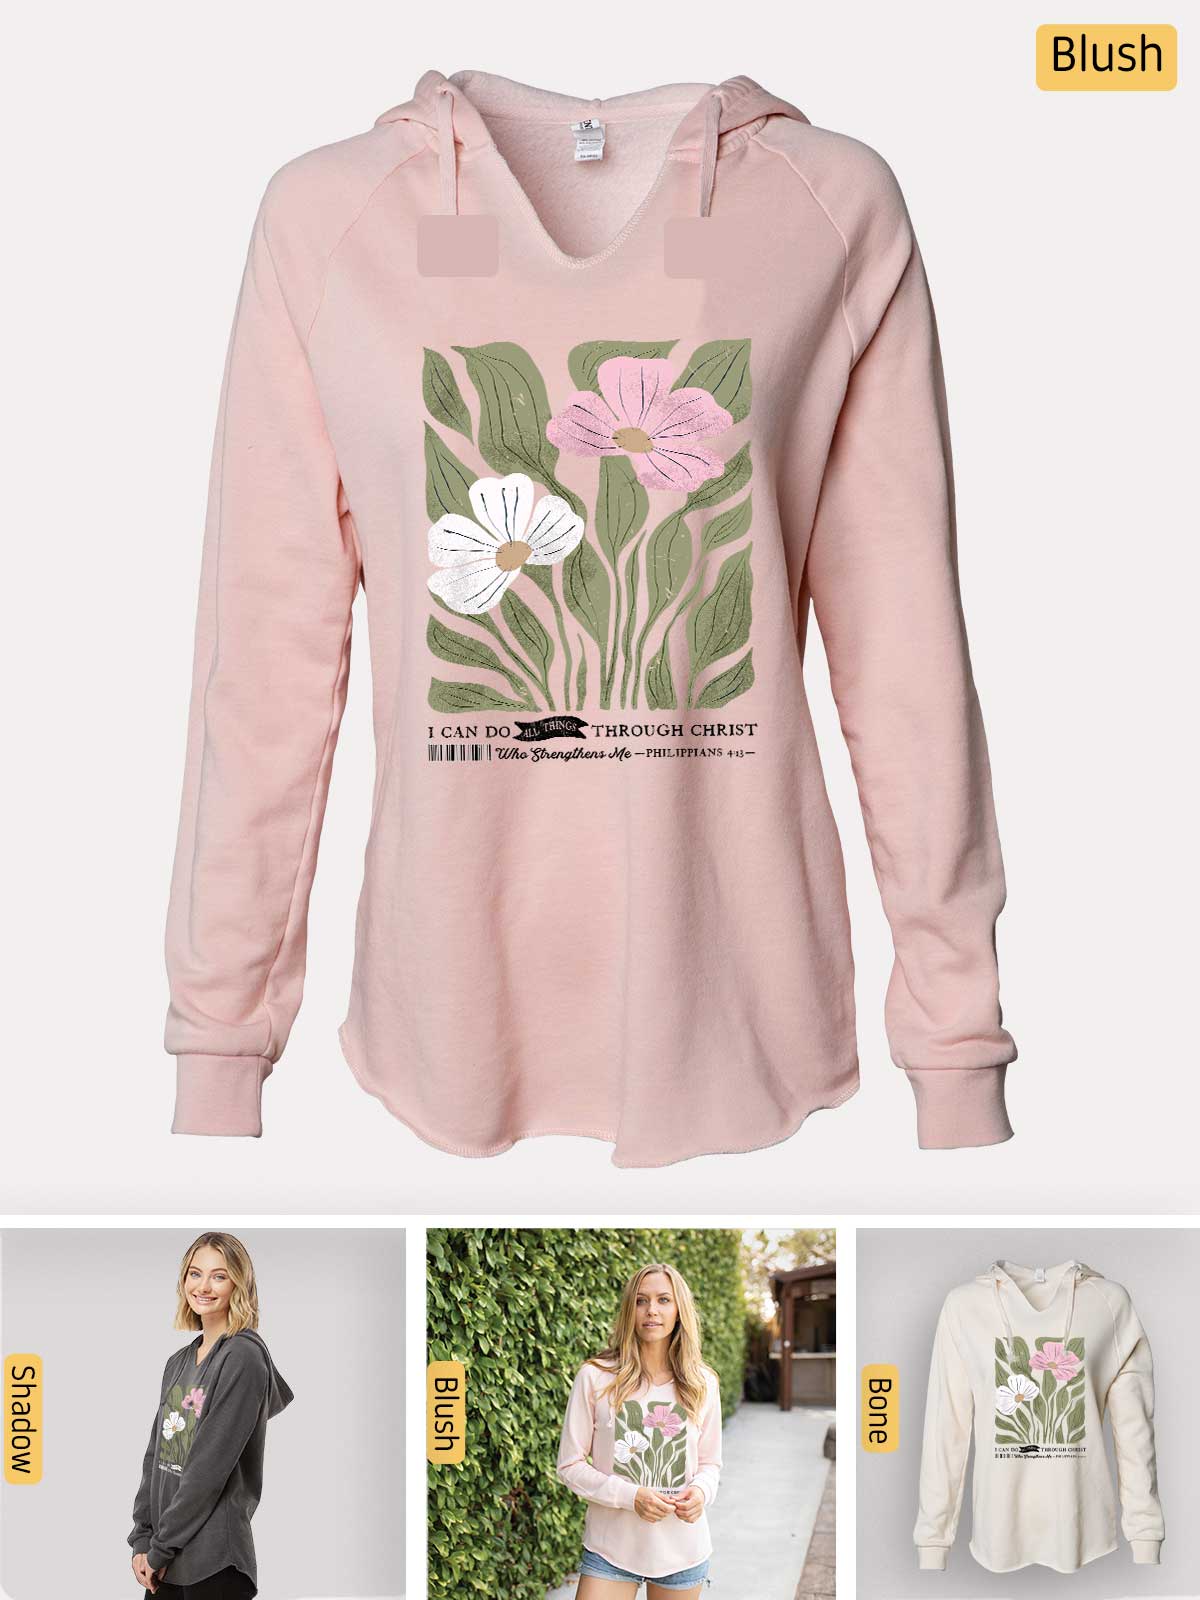 a women's sweatshirt with flowers on it